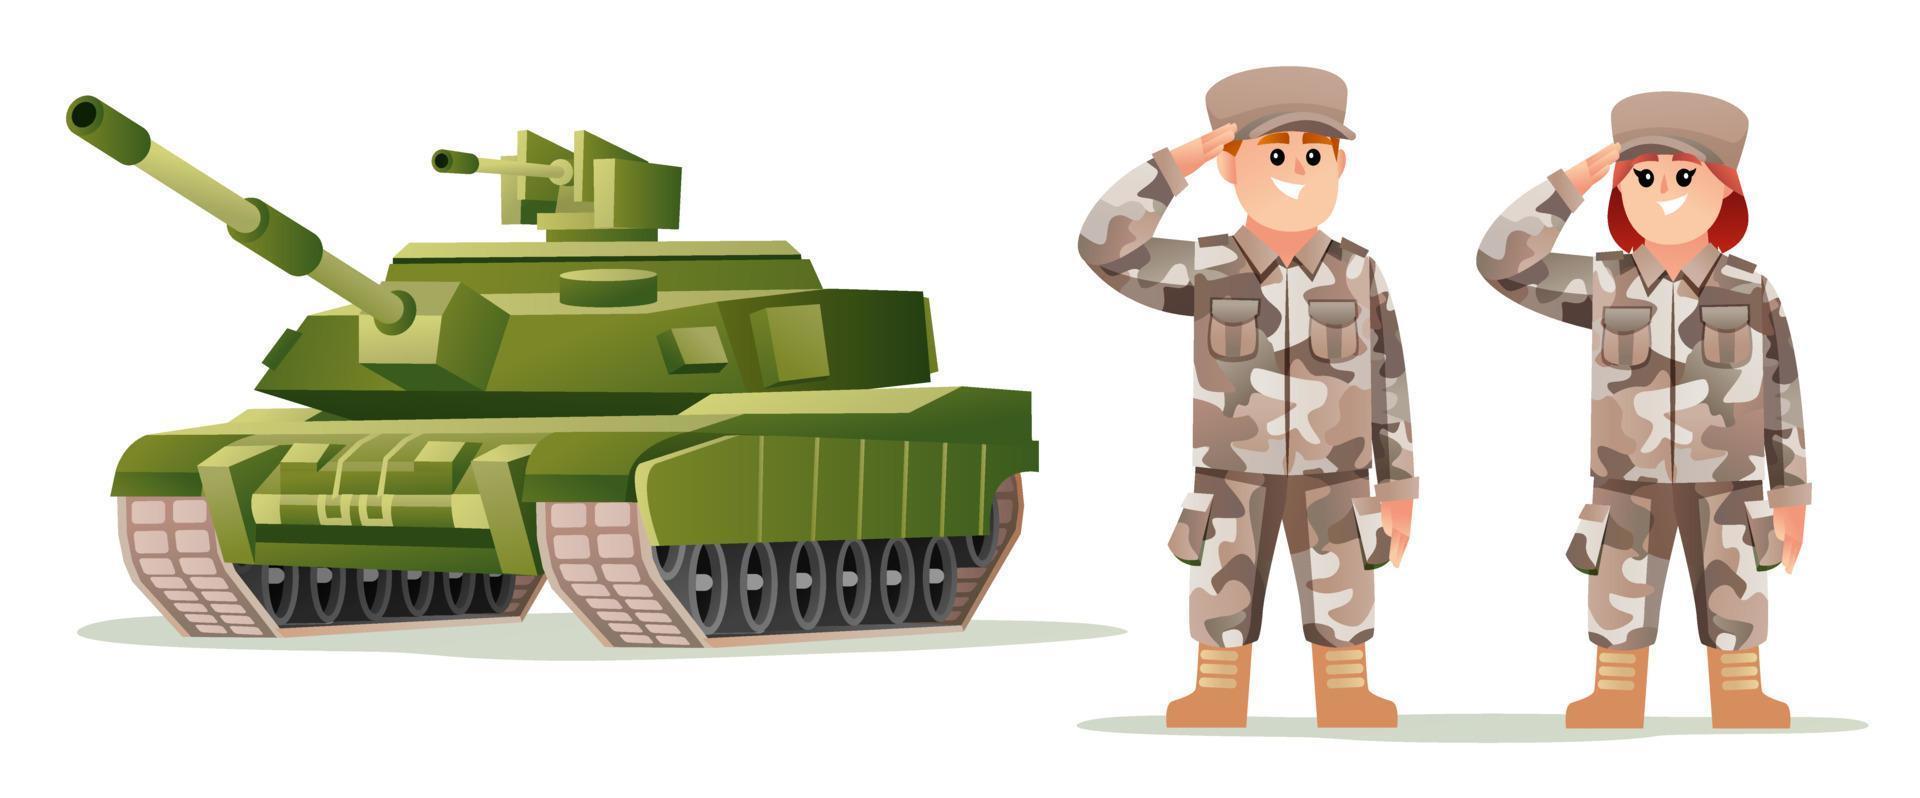 personnages mignons de soldat de l'armée garçon et fille avec illustration de dessin animé de réservoir vecteur